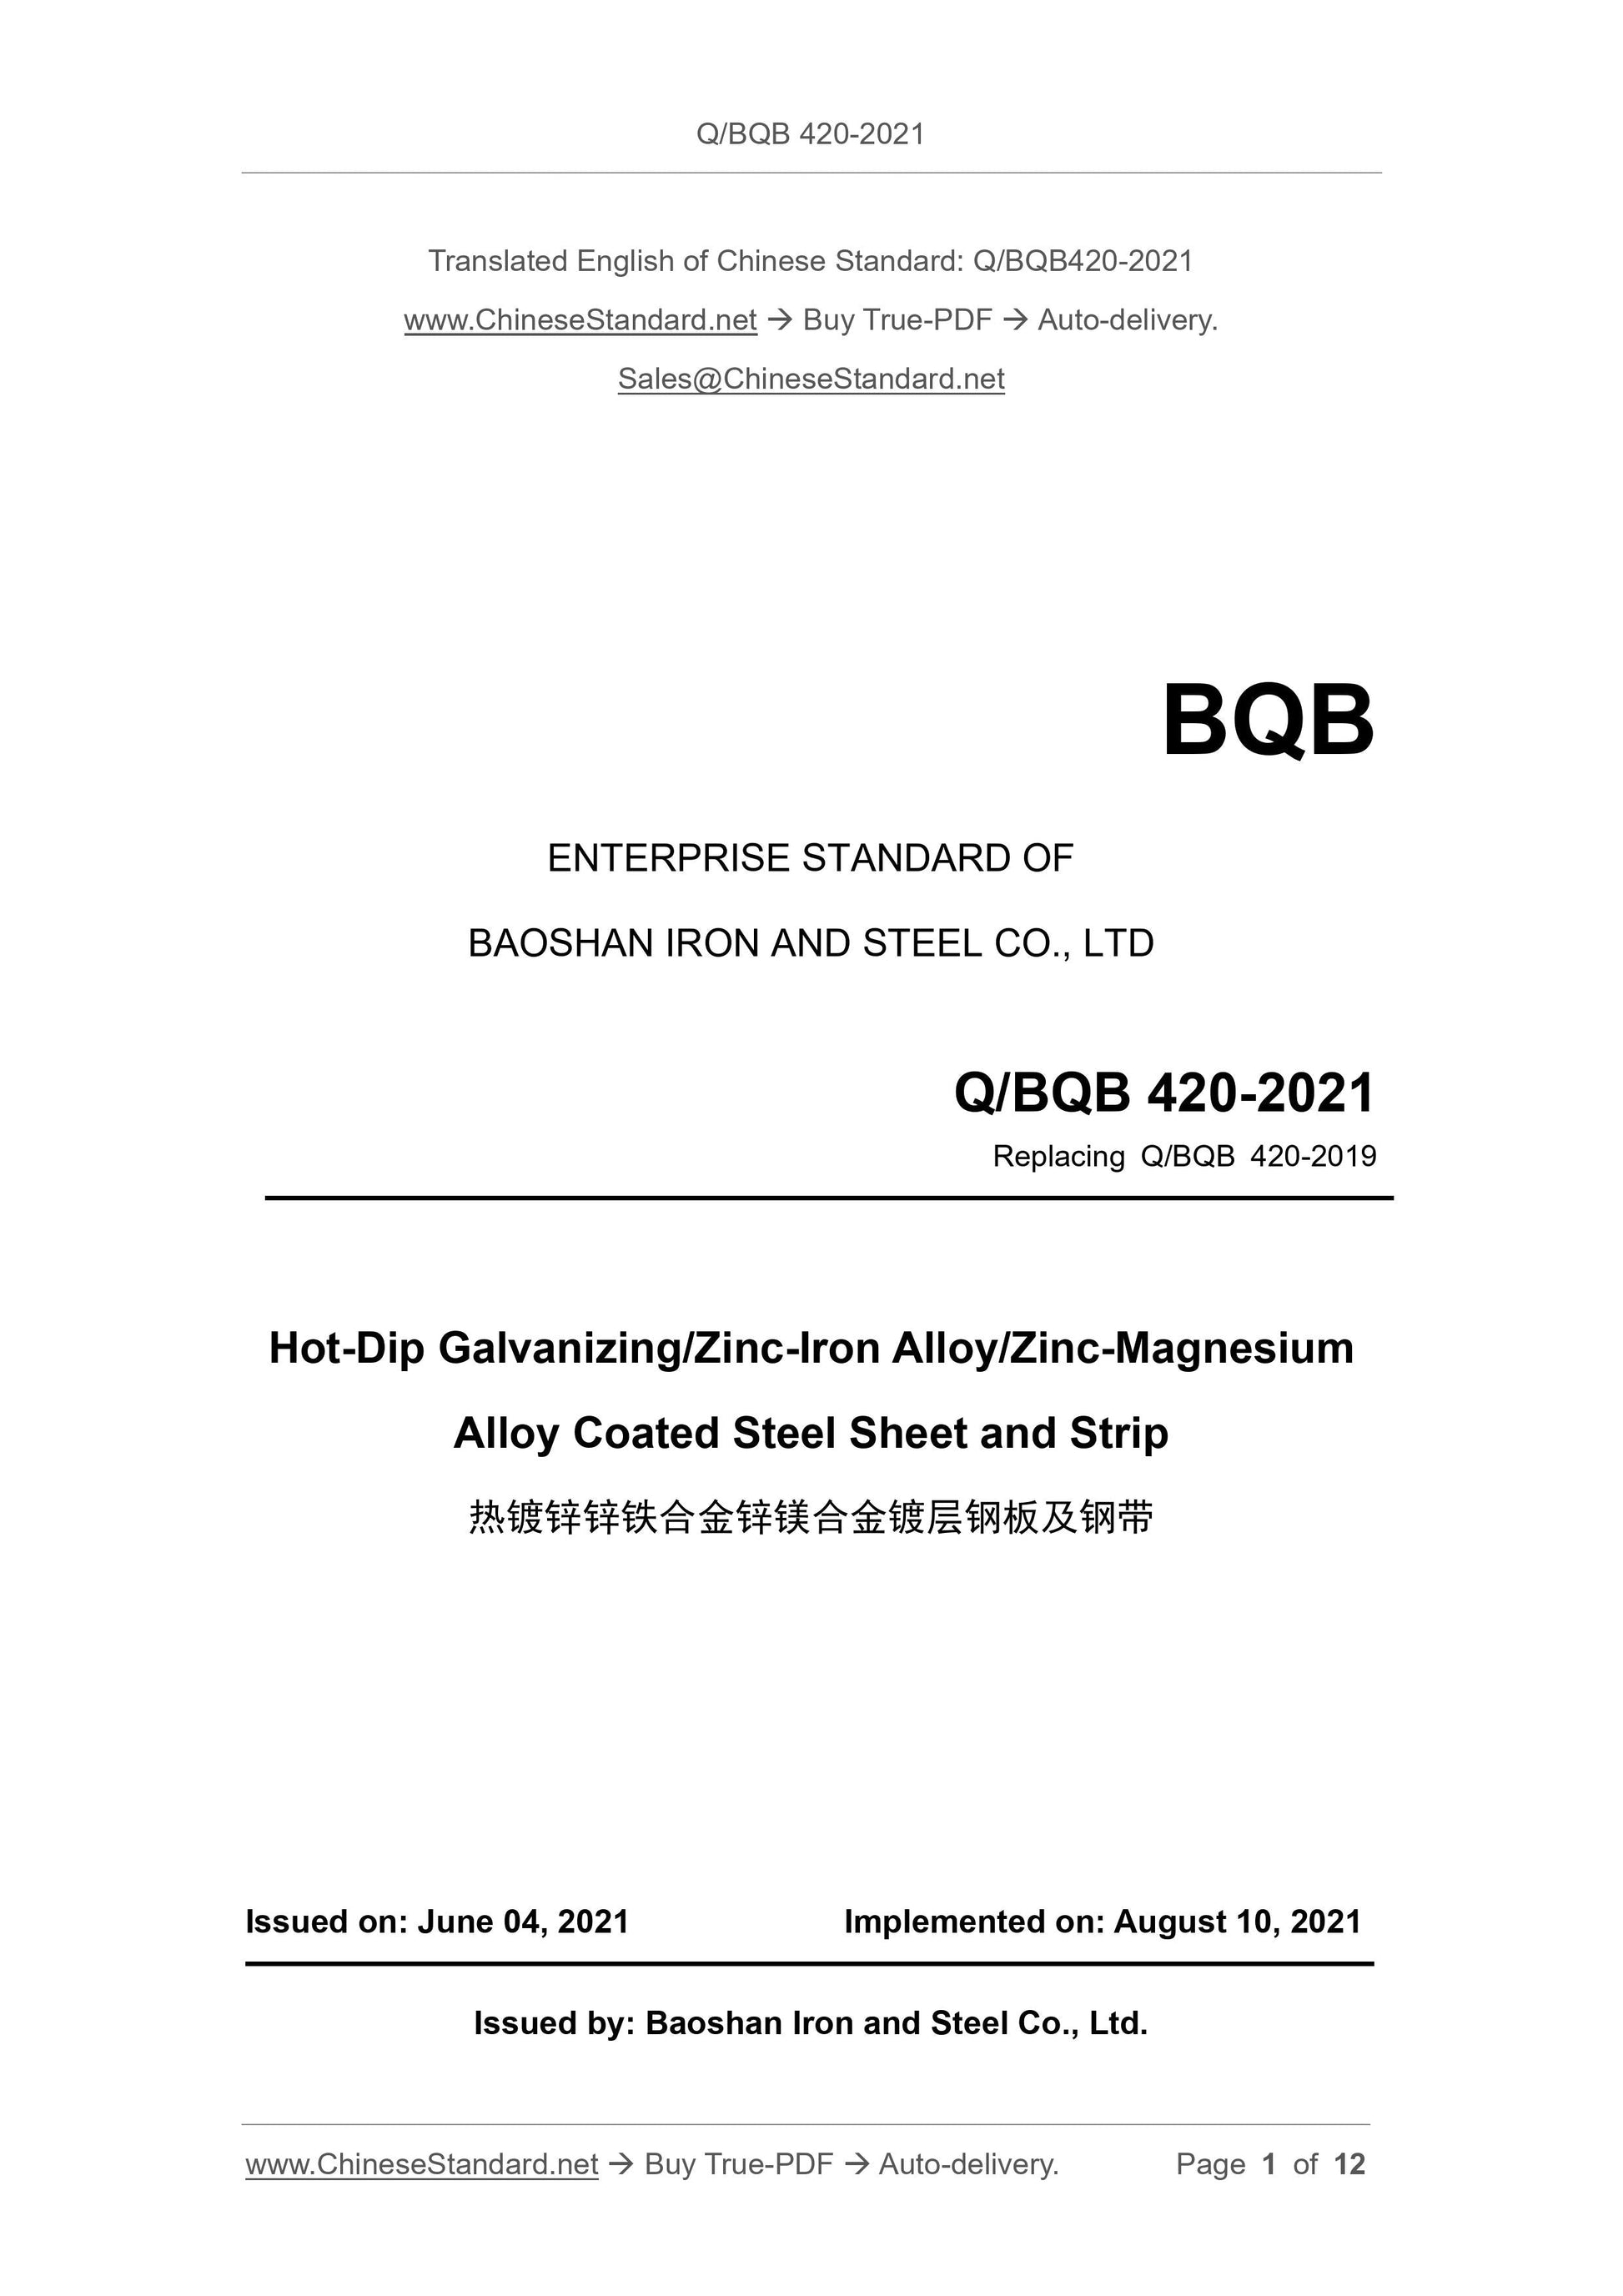 Q/BQB 420-2021 Page 1